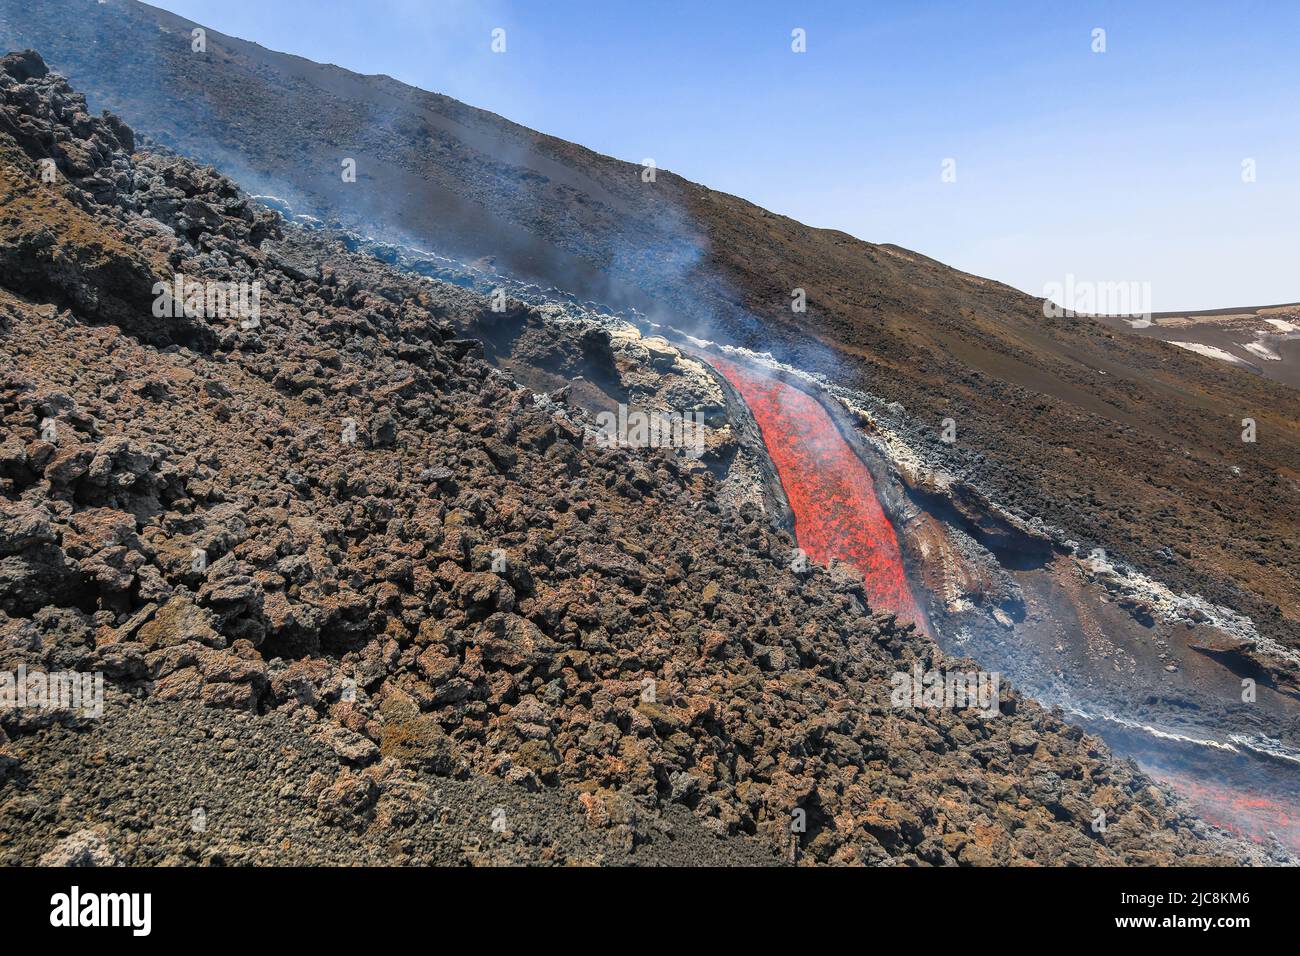 Chute de lave de l'Etna qui coule sur le volcan de la Sicile dans la Valle del Bove avec fumée et canal d'écoulement de lave Banque D'Images